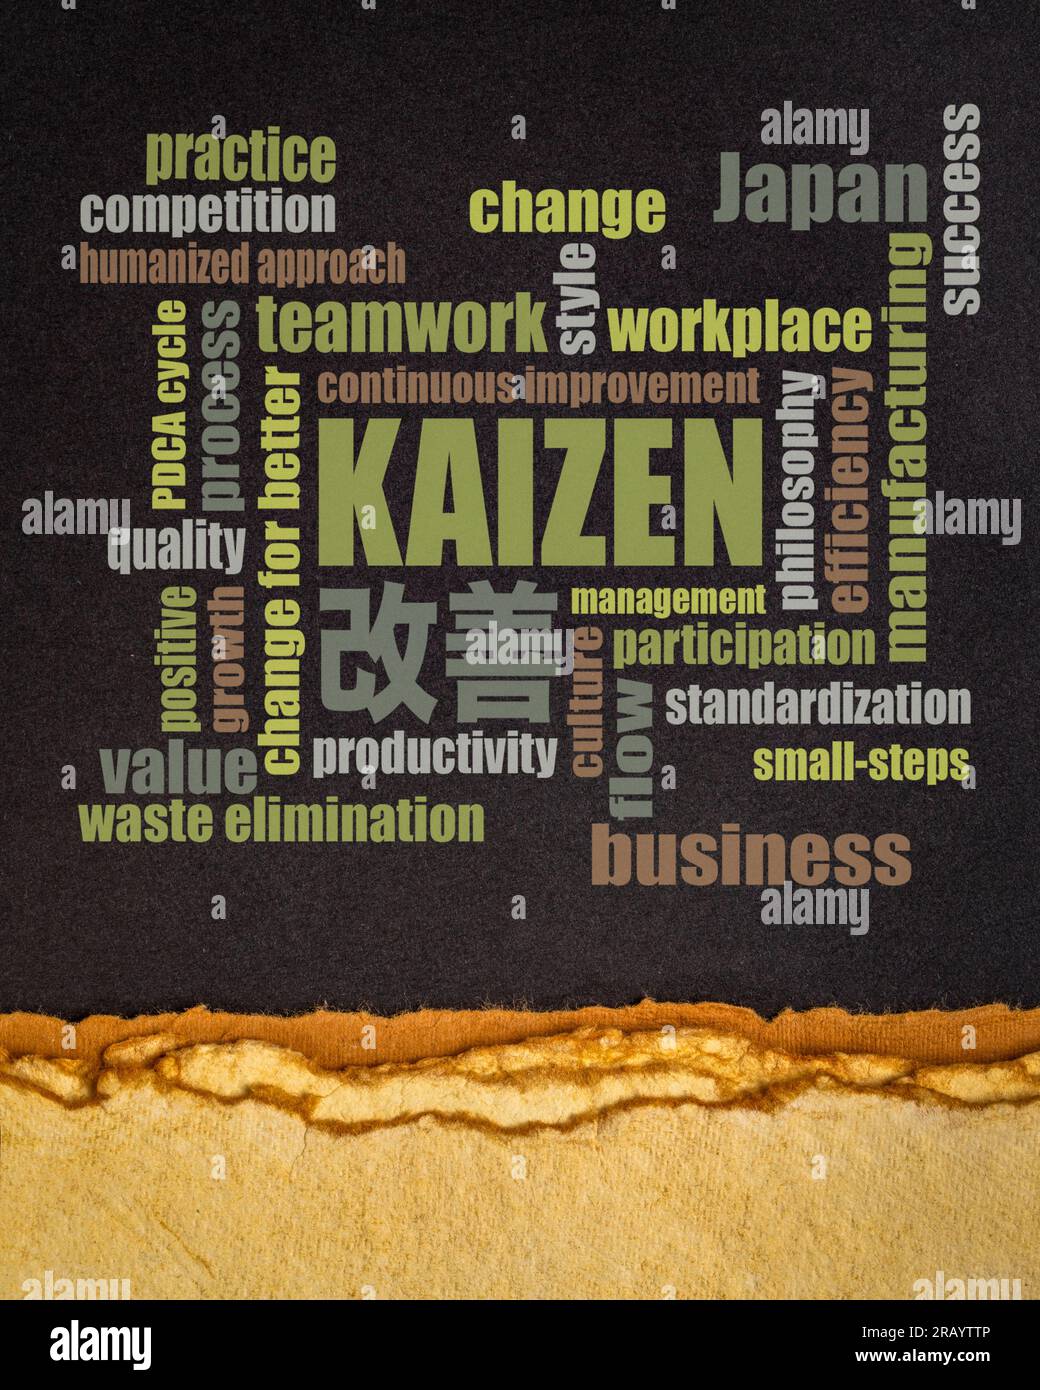 Kaizen - japanisches Konzept der kontinuierlichen Verbesserung - Wortwolke auf einem schwarzen Papier Stockfoto